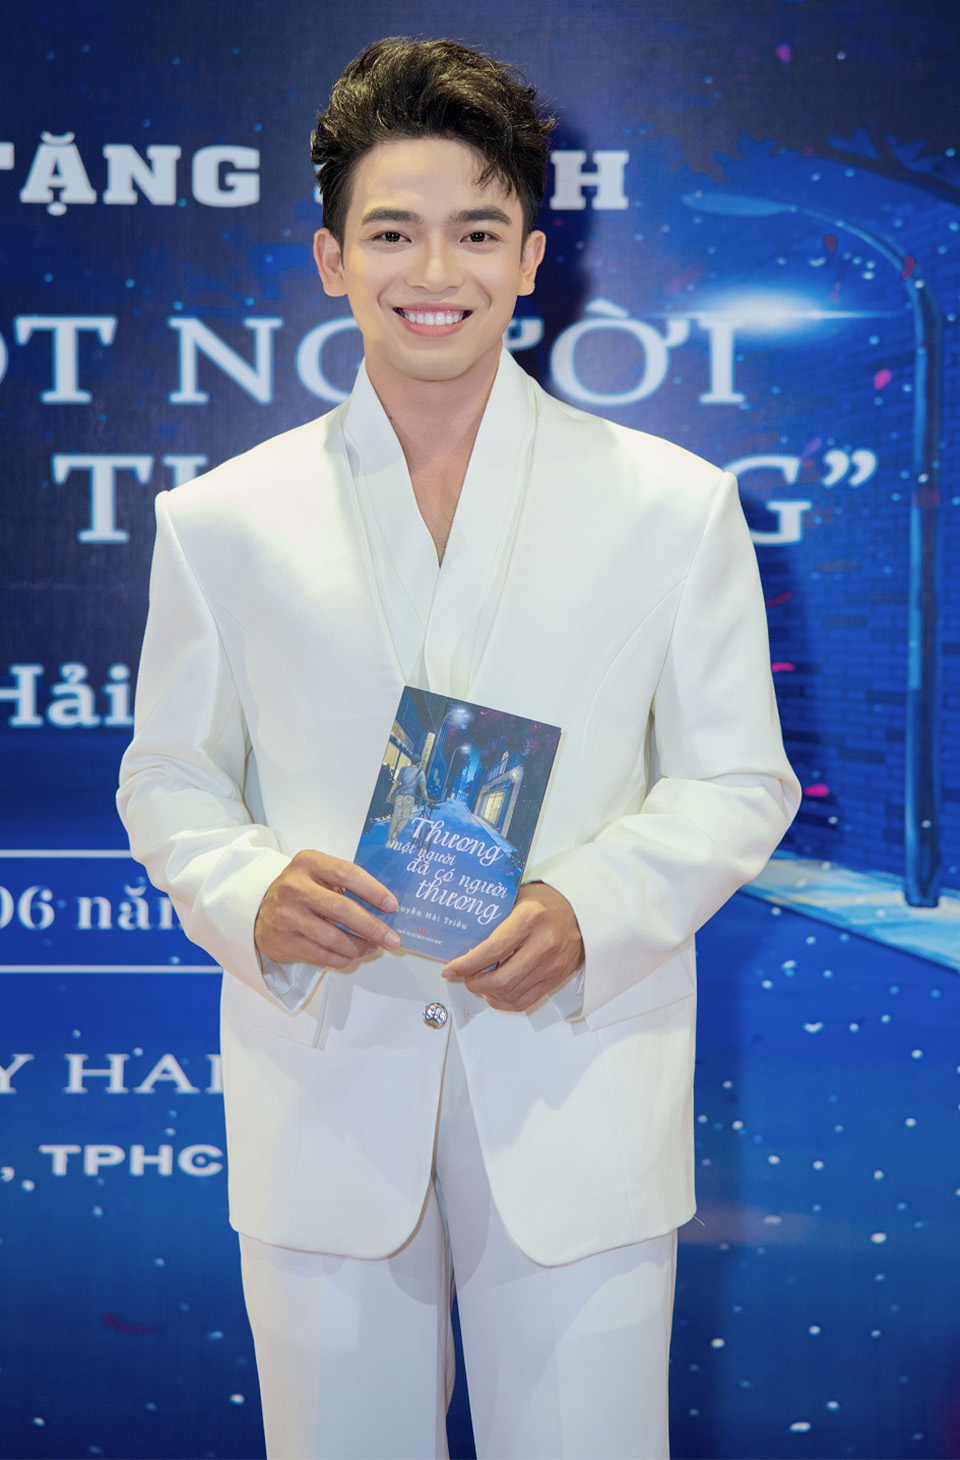 MC – diễn viên Hải Triều ra mắt cuốn sách đầu tay